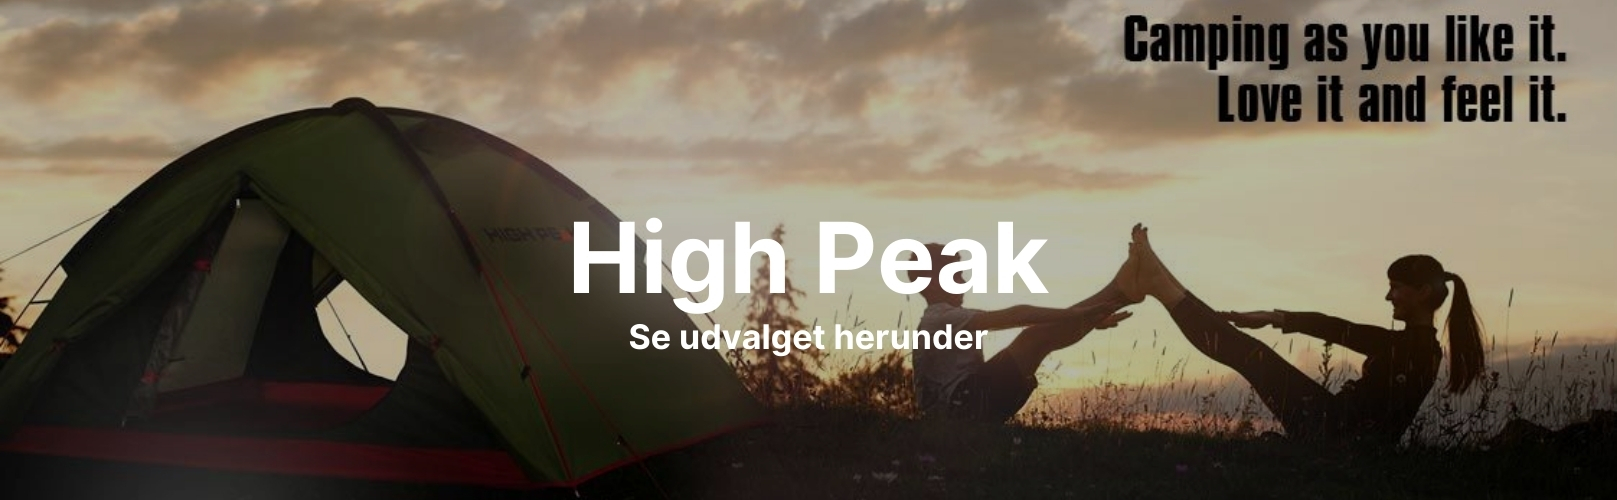 High Peak outdoor banner